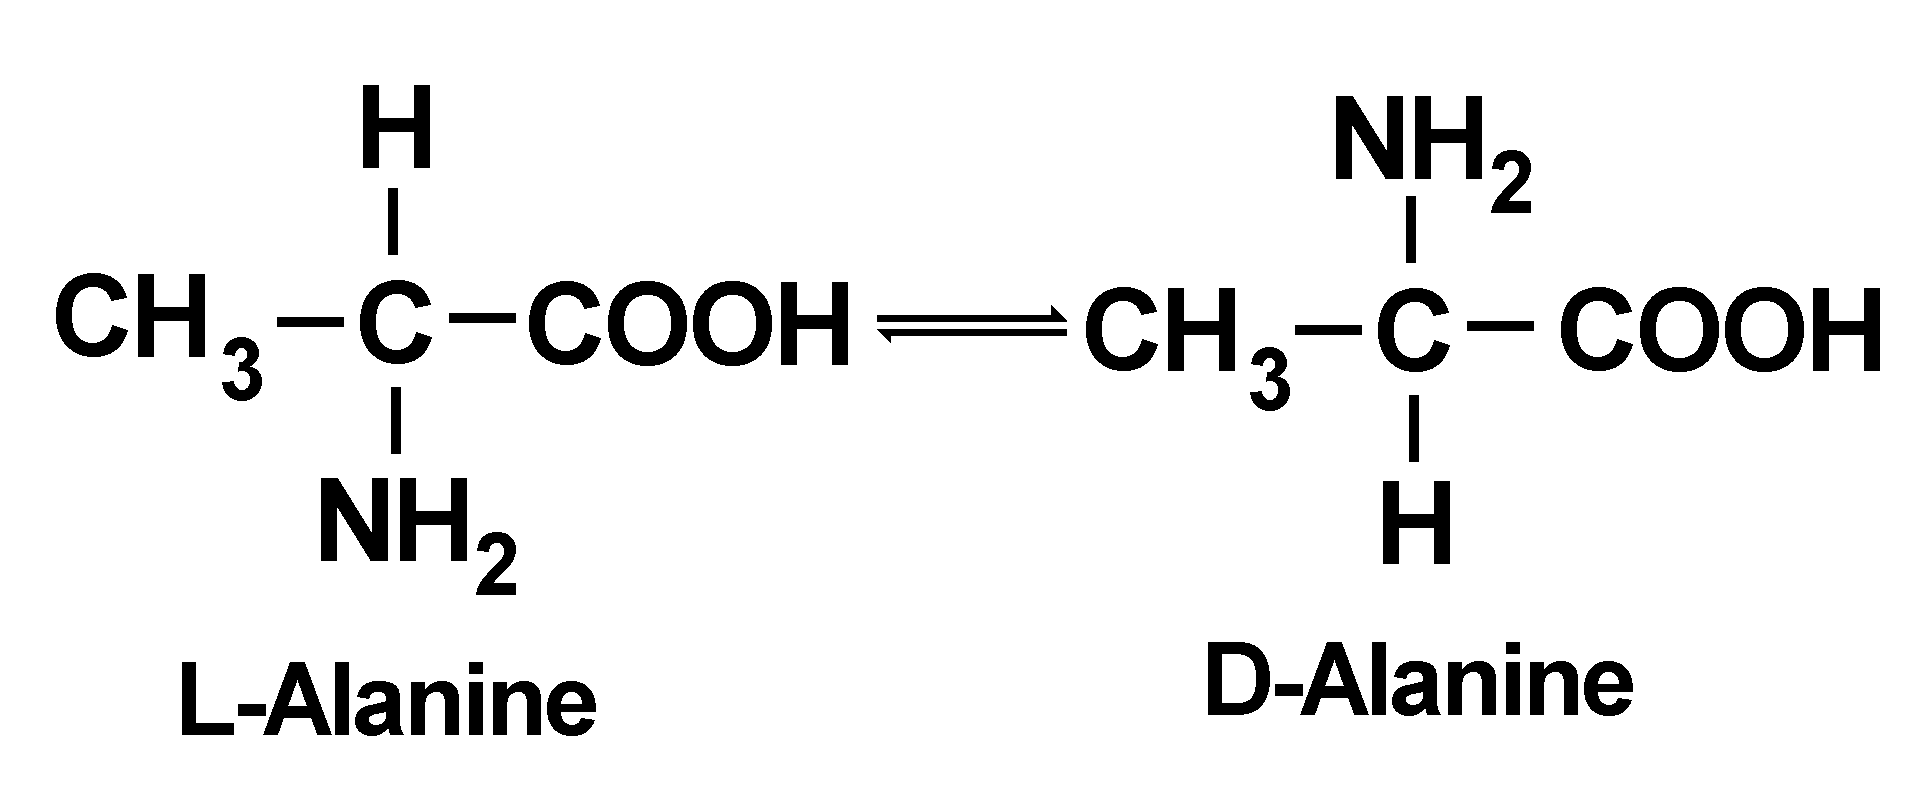 mmass edit regular amino acids